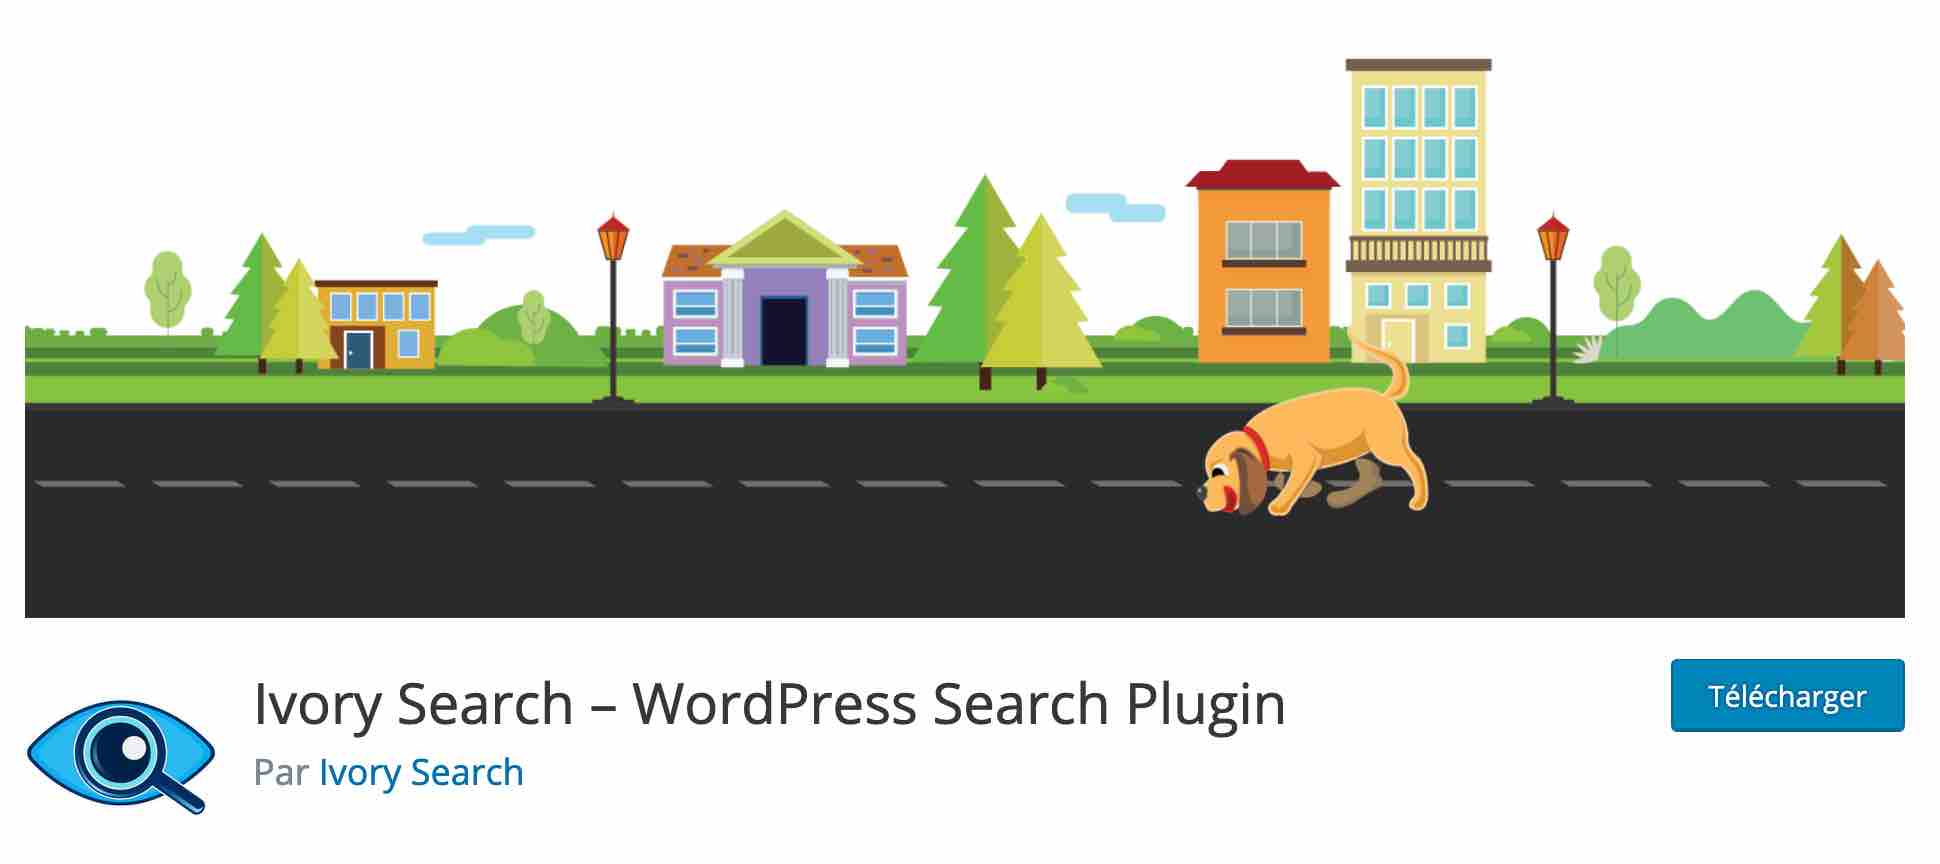 Le plugin Ivory Search permet d'ajouter une barre de recherche sur WordPress.